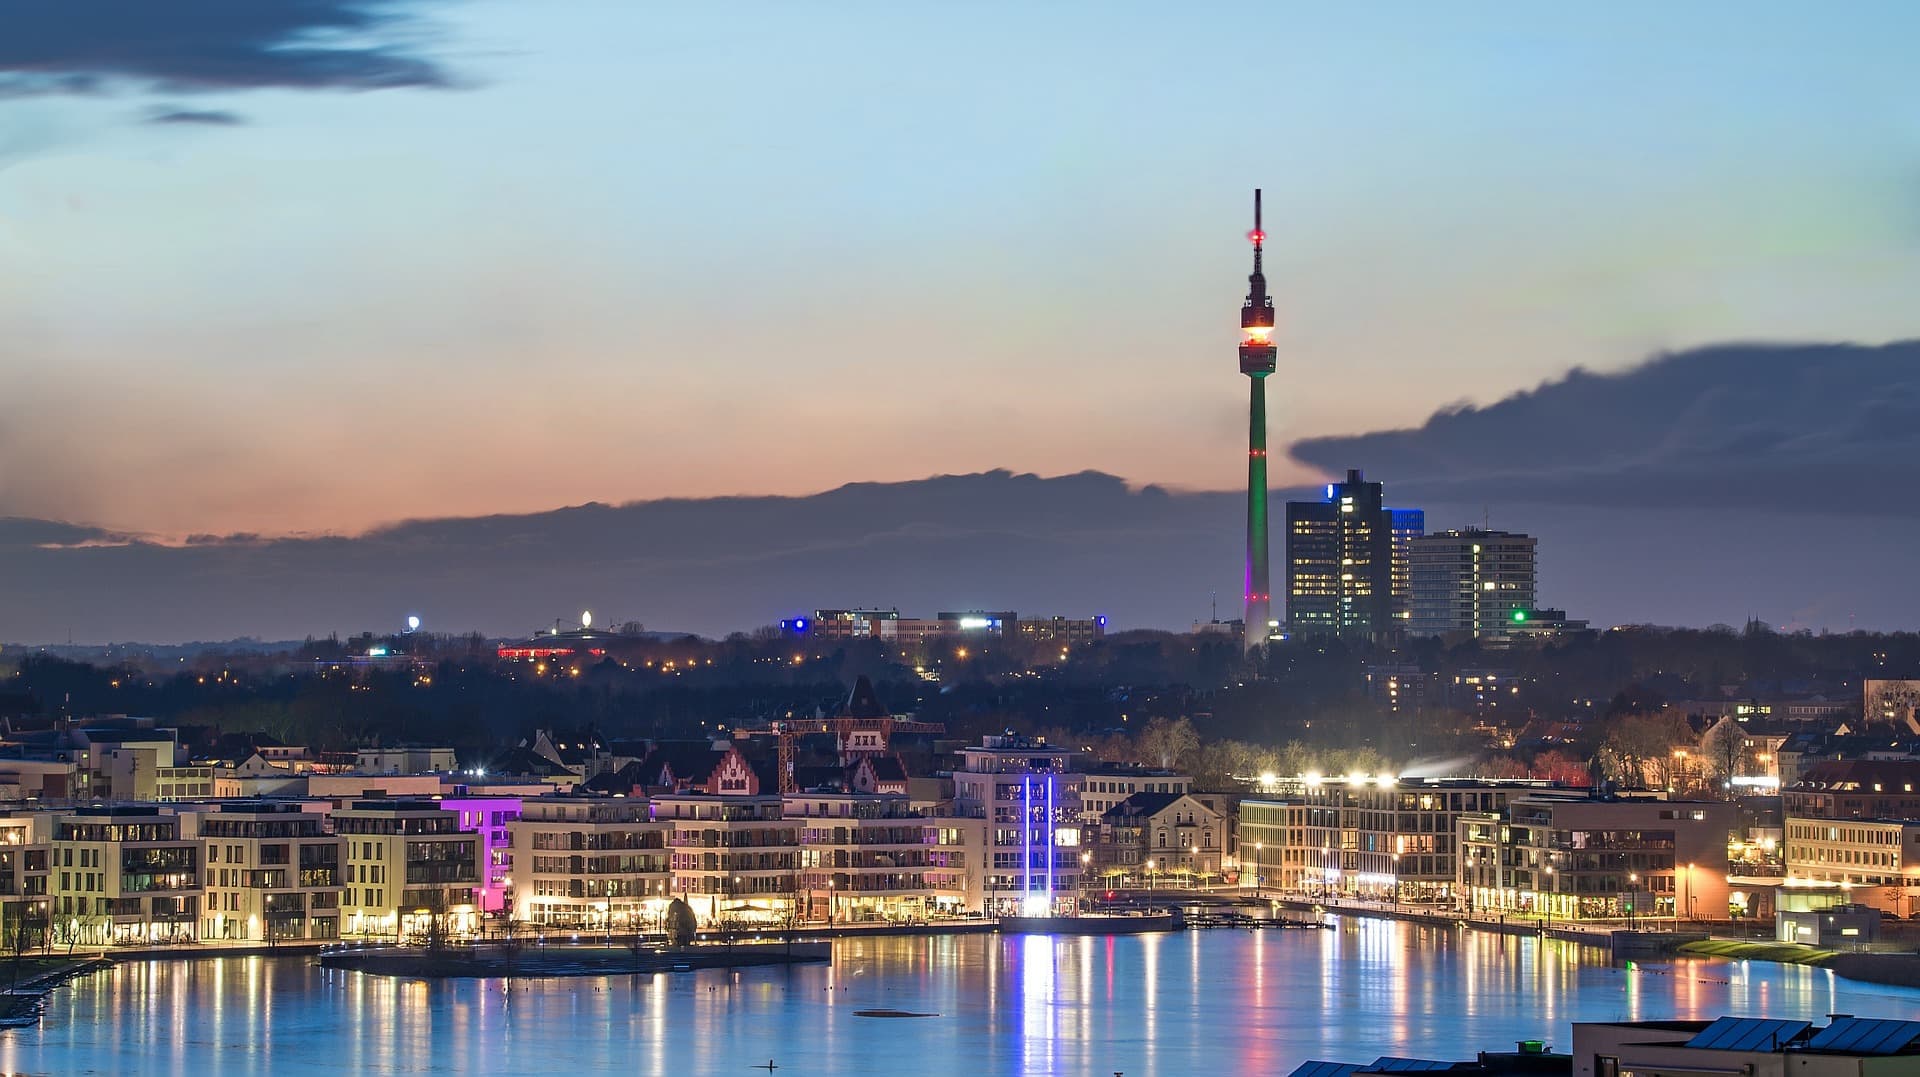 Skyline von Dortmund mit Fernsehturm